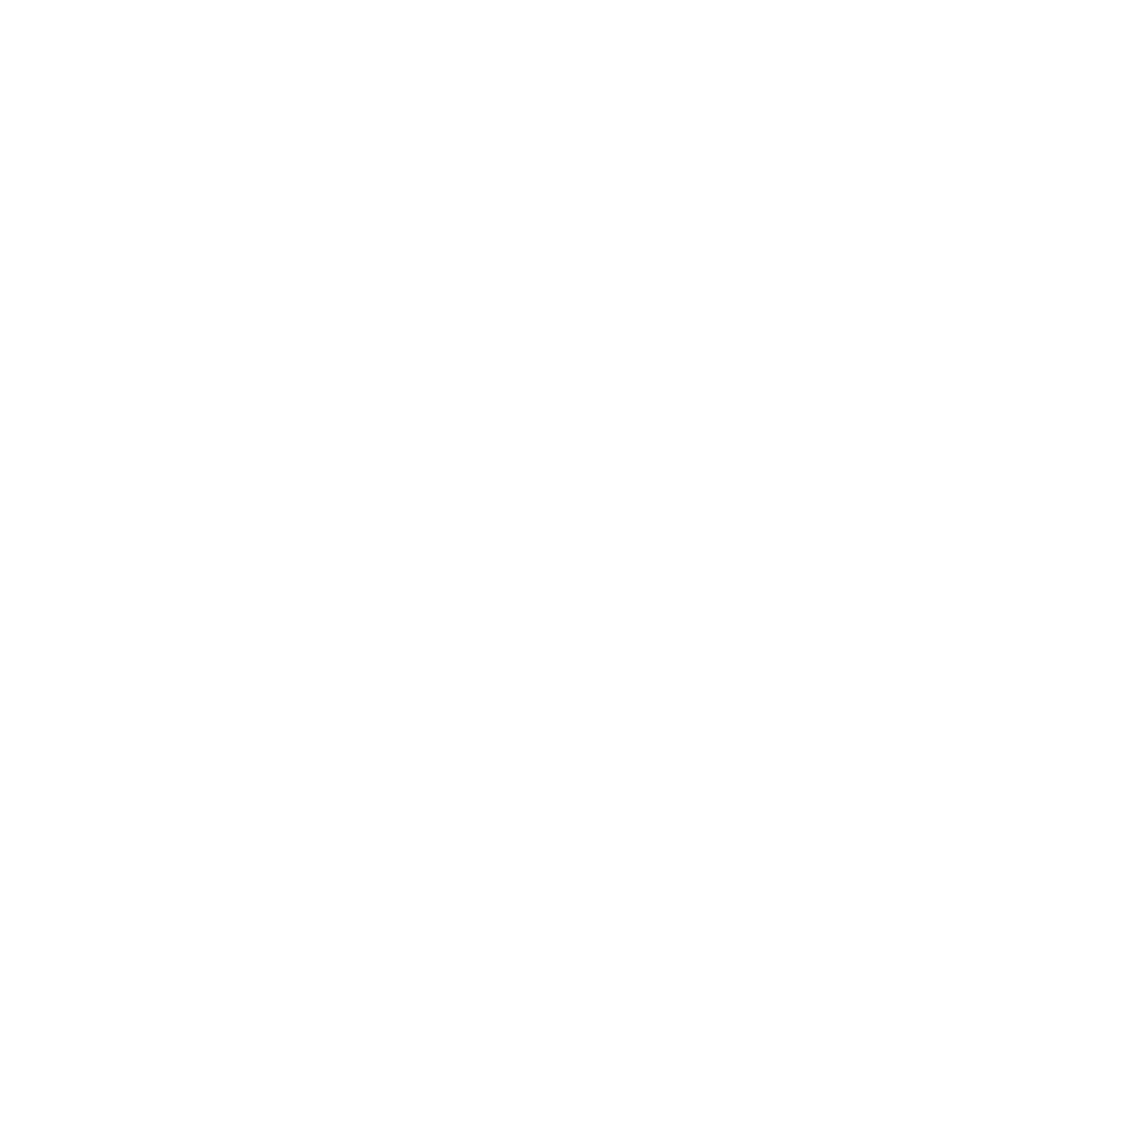 SF DESIGN STUDIO